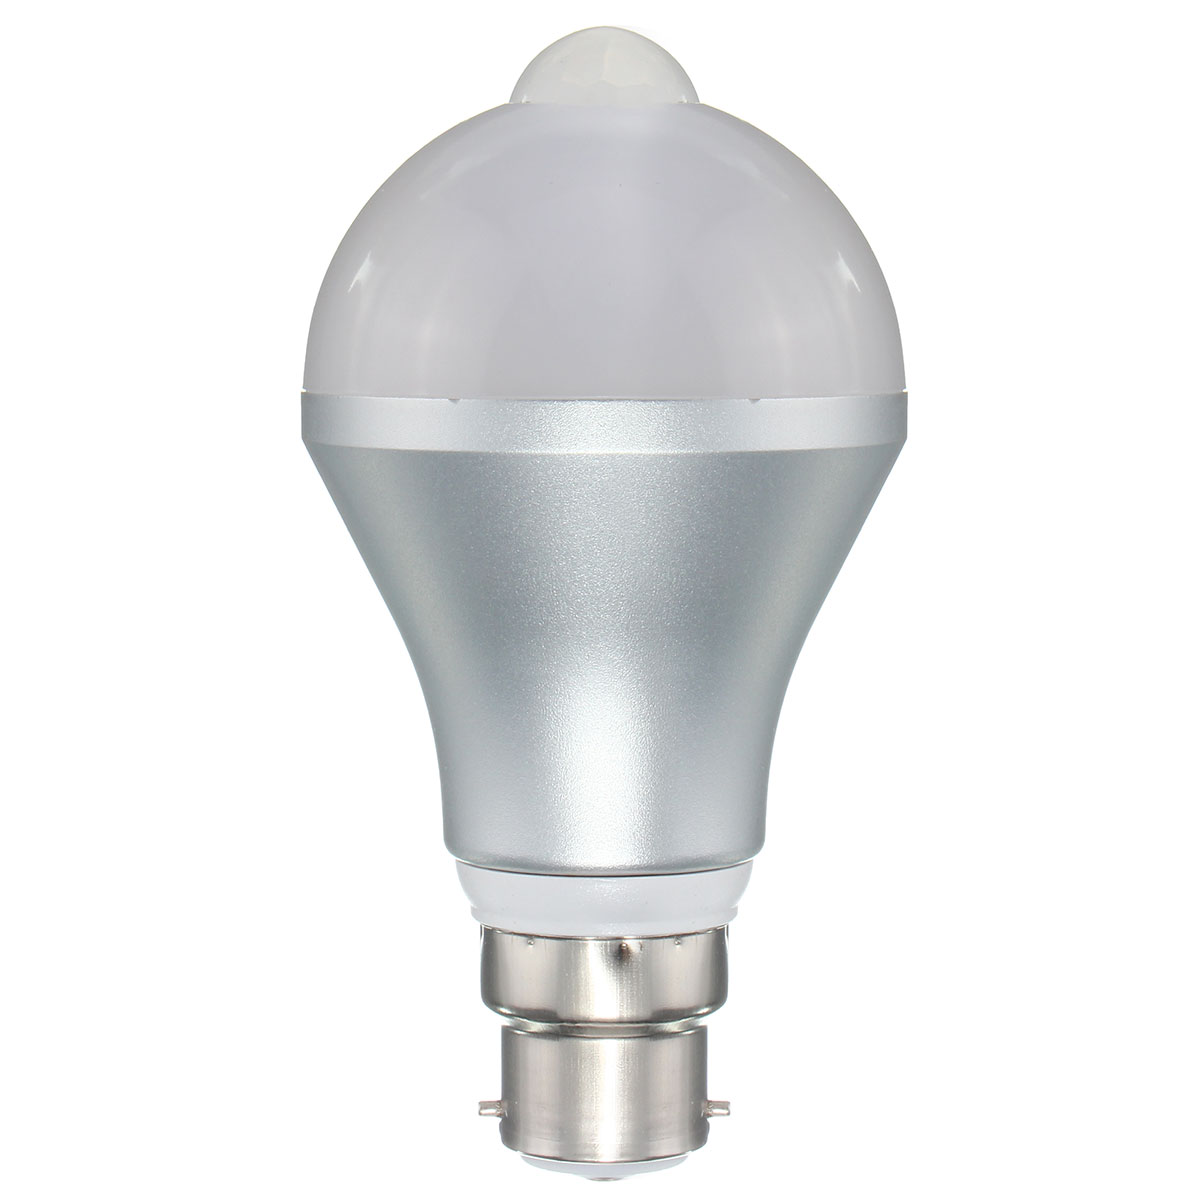 E27-B22-7W-SMD-5730-PIR-Infrared-Motion-Light-Sensor-16-LED-Light-Bulb-AC85-265V-1529219